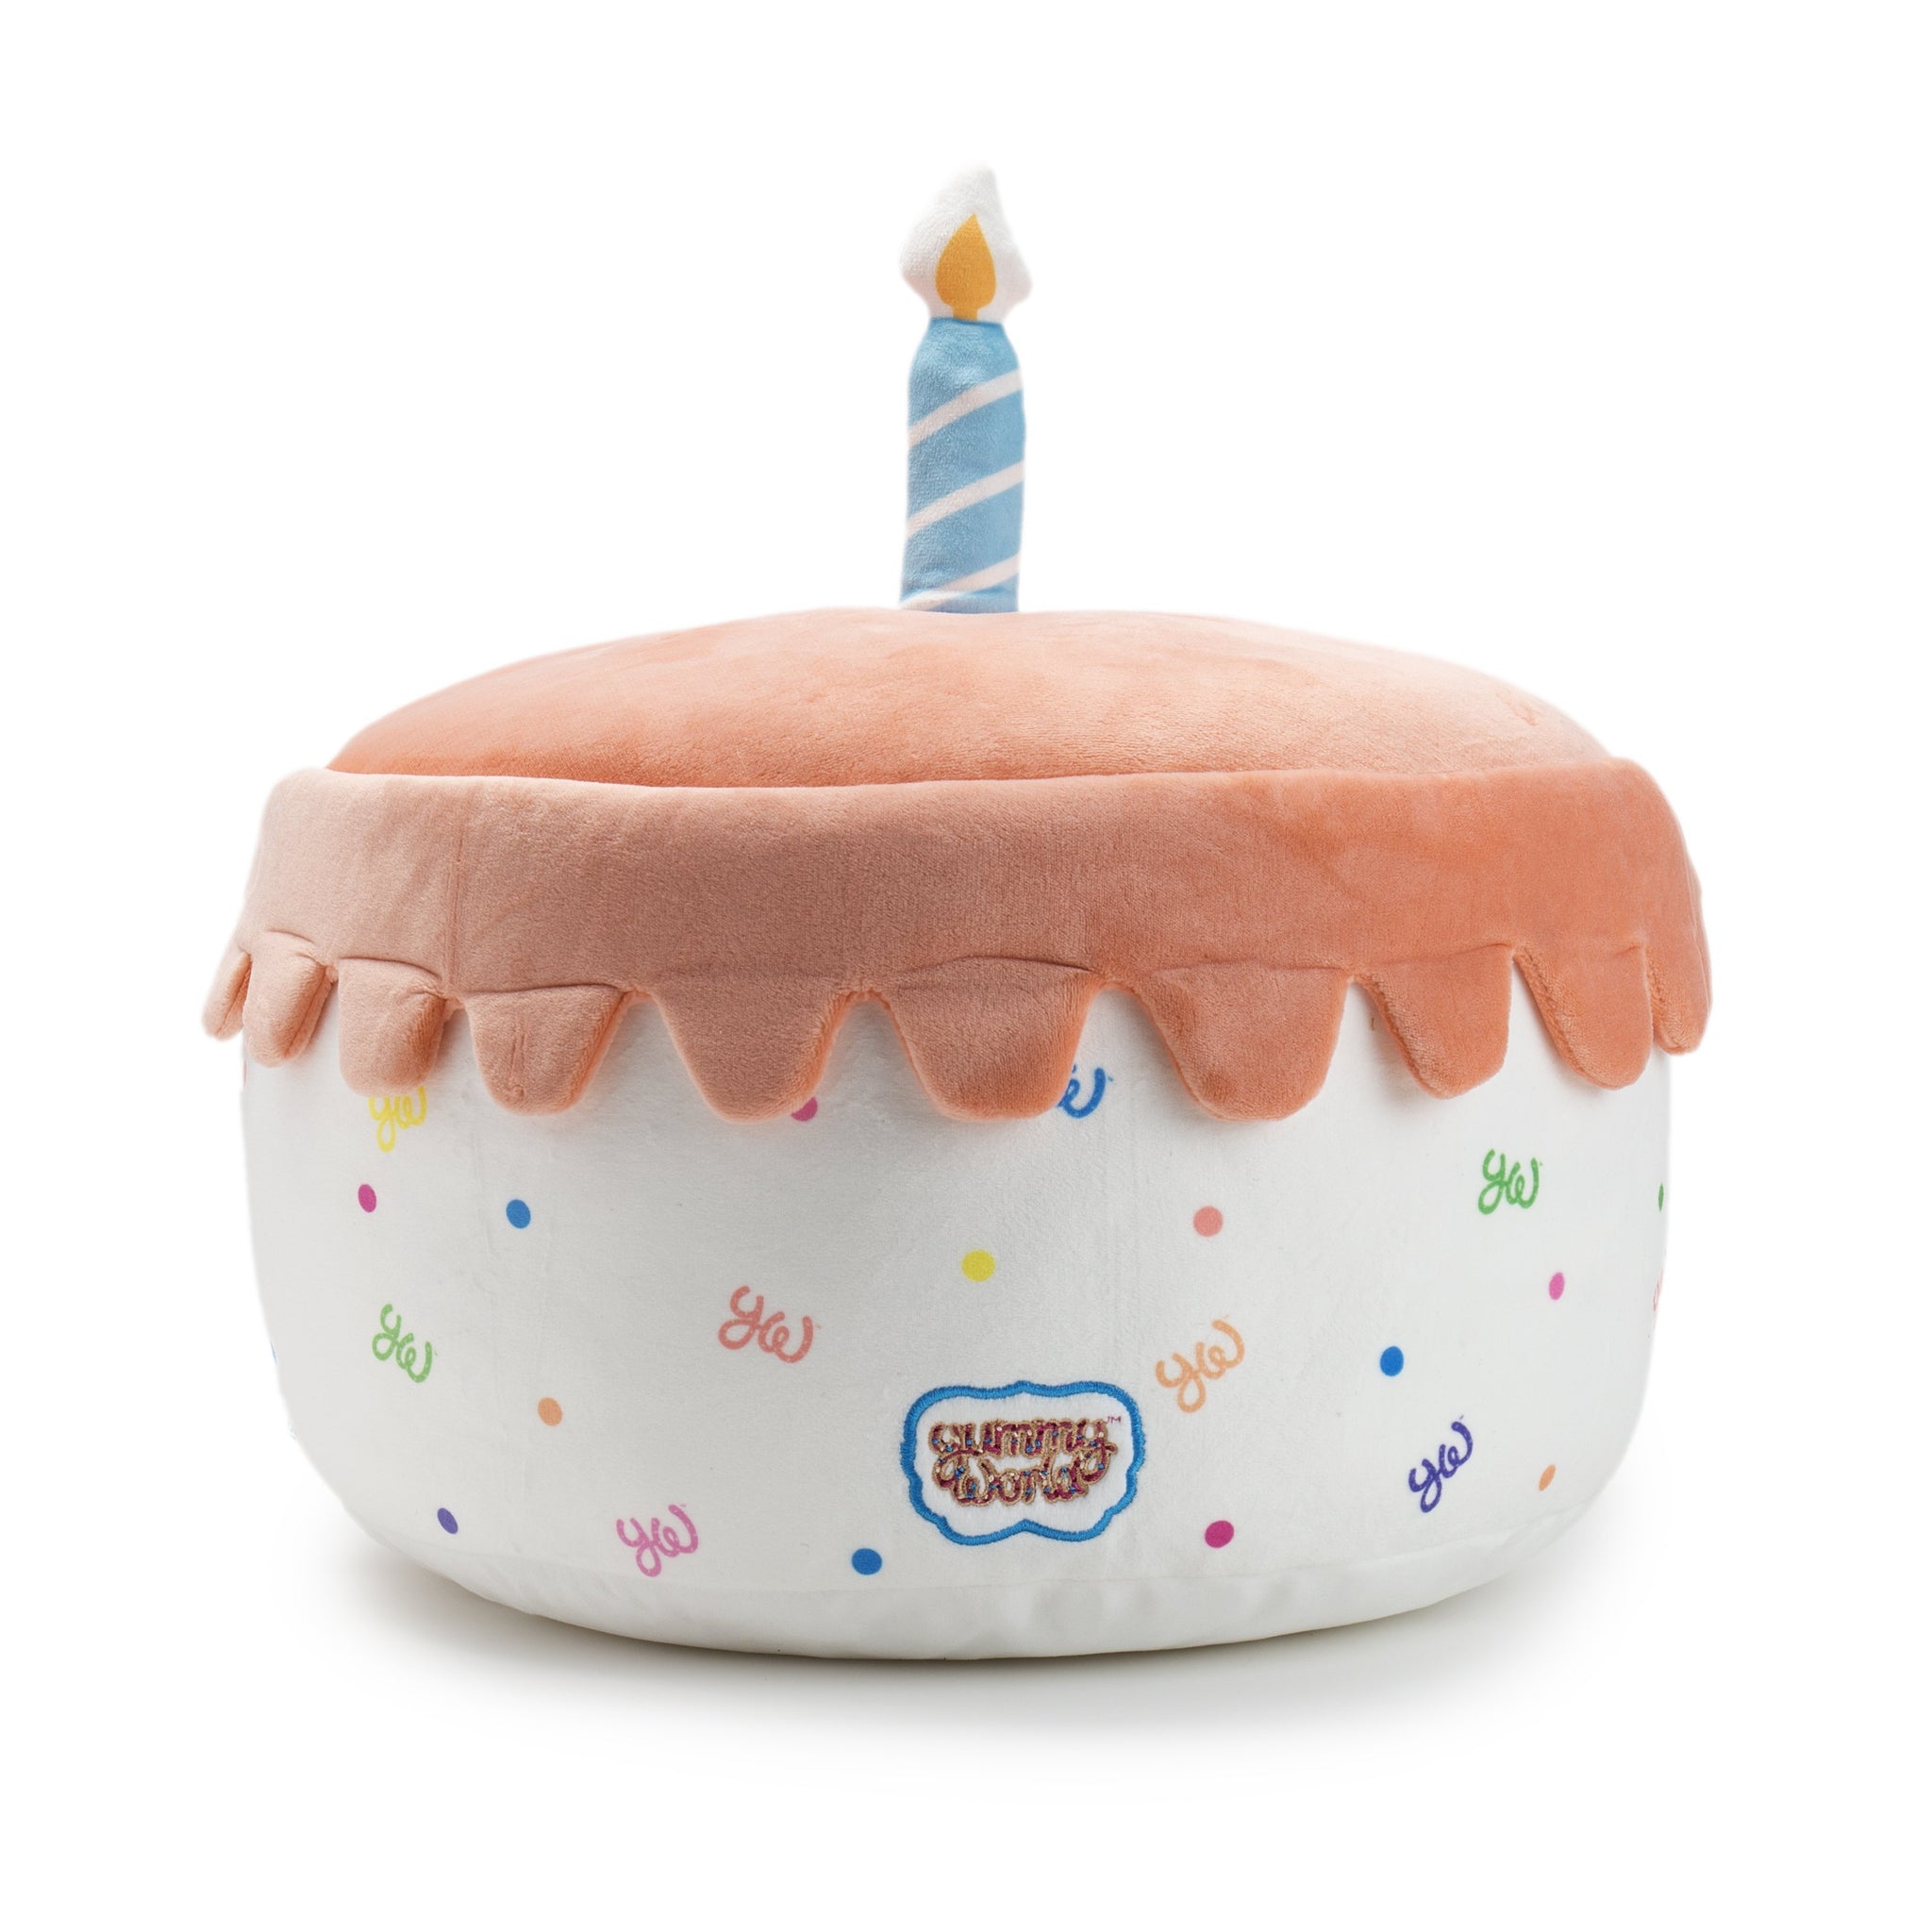 Yummy World Casey Confetti Funfetti Cake Plush - Kidrobot